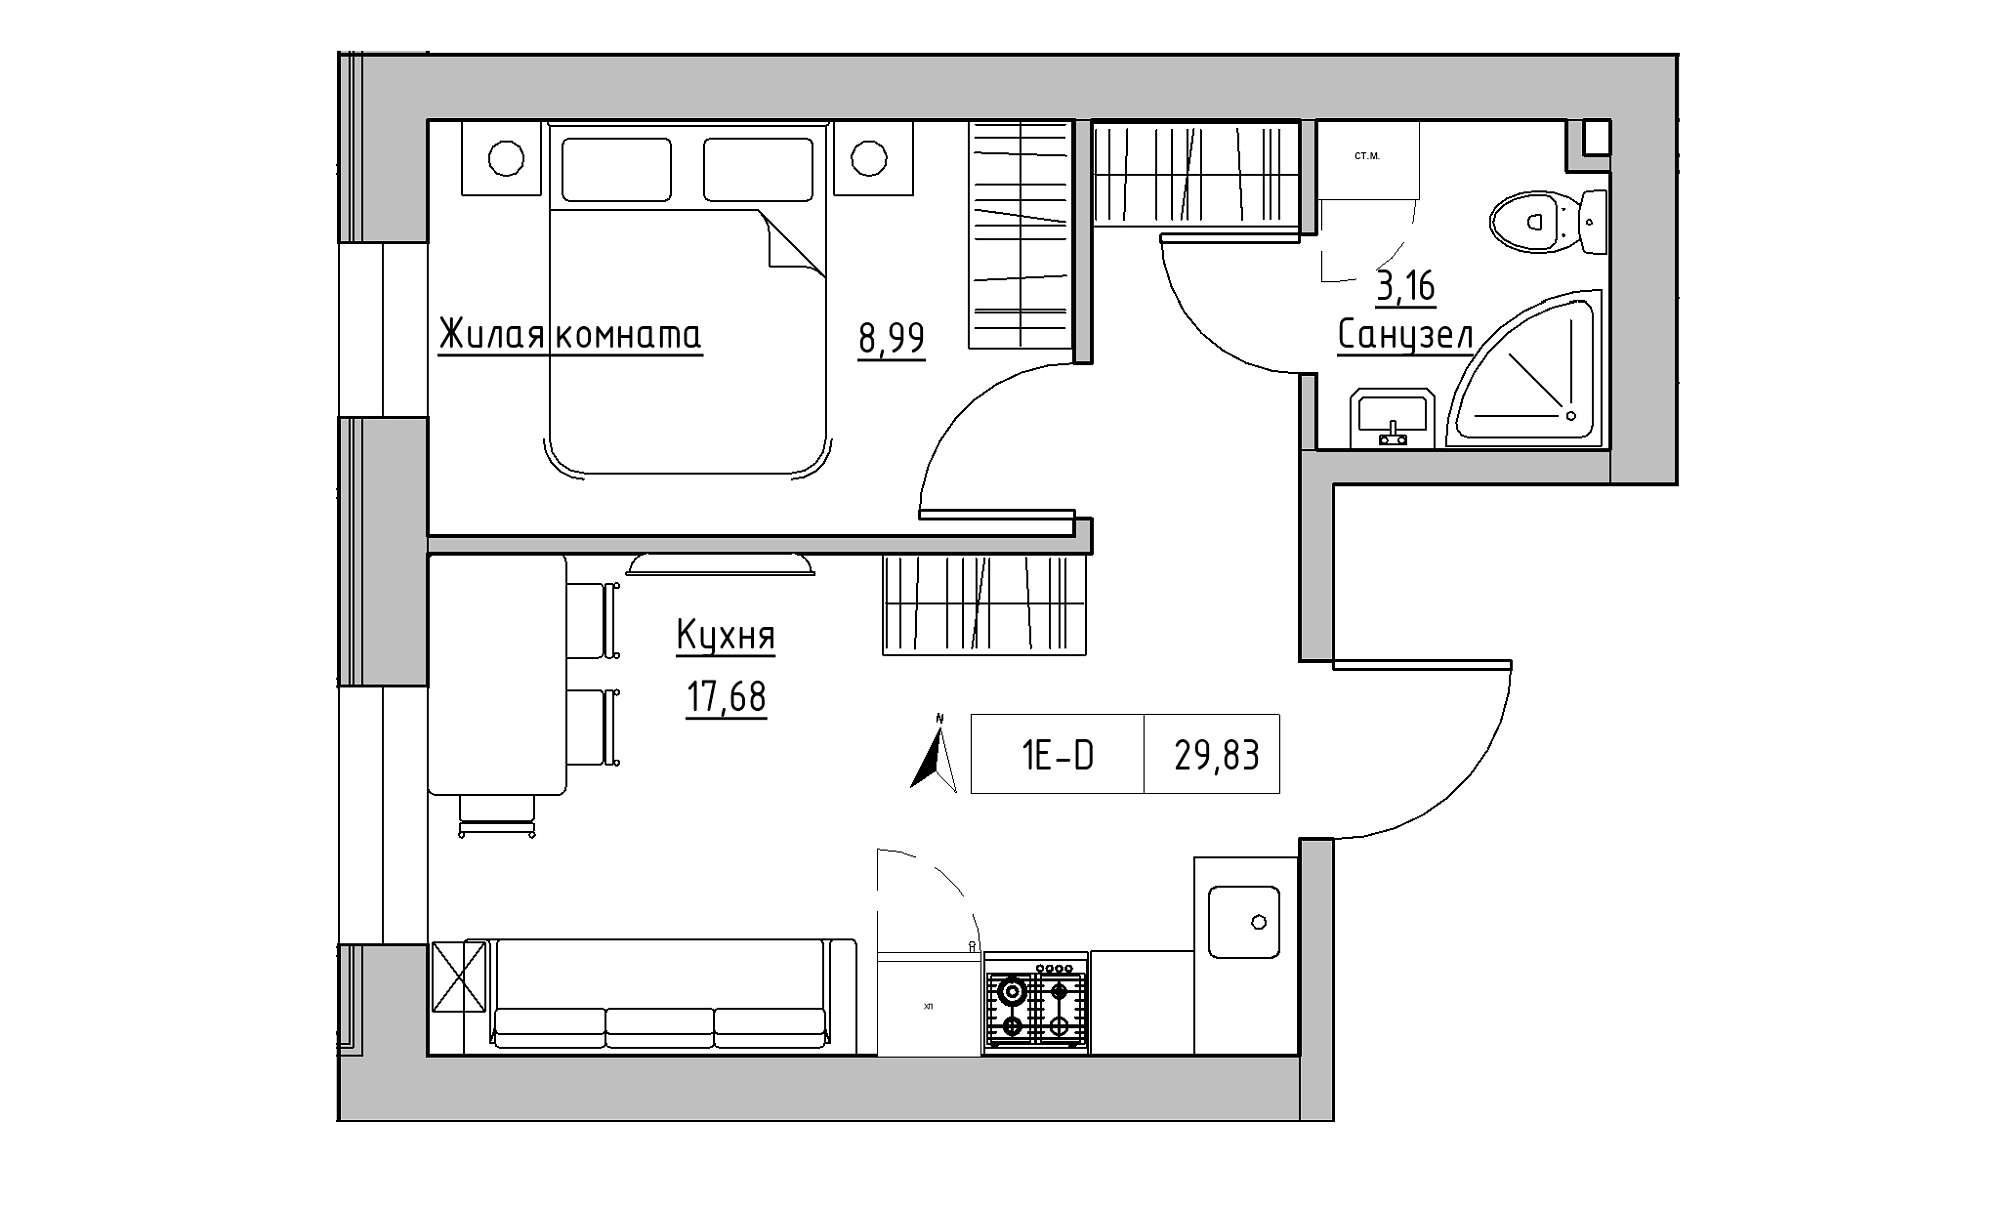 Планування 1-к квартира площею 29.83м2, KS-023-01/0003.